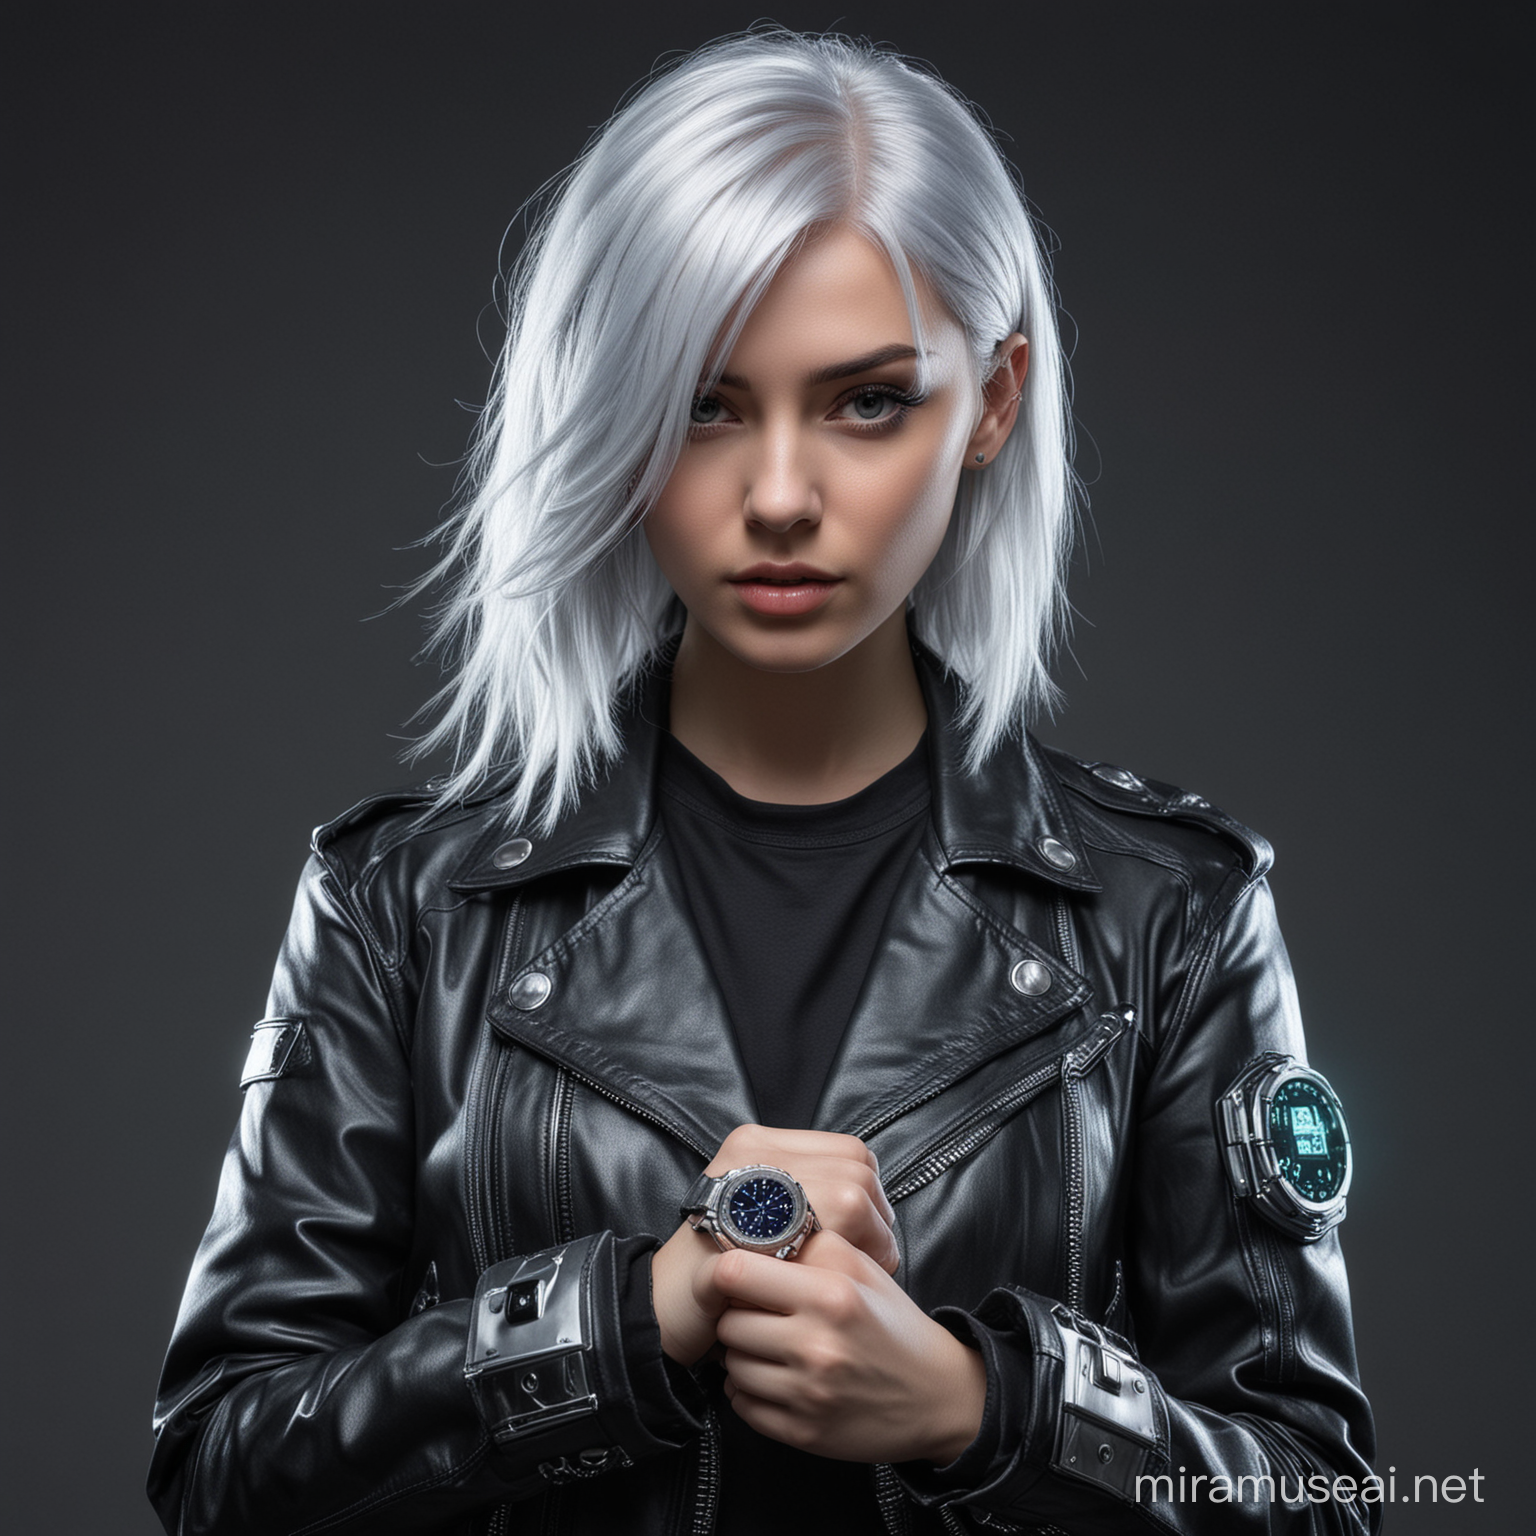 Девушка из киберпанка, серебряные волосы, кожаная куртка, голограмма часов в руках 